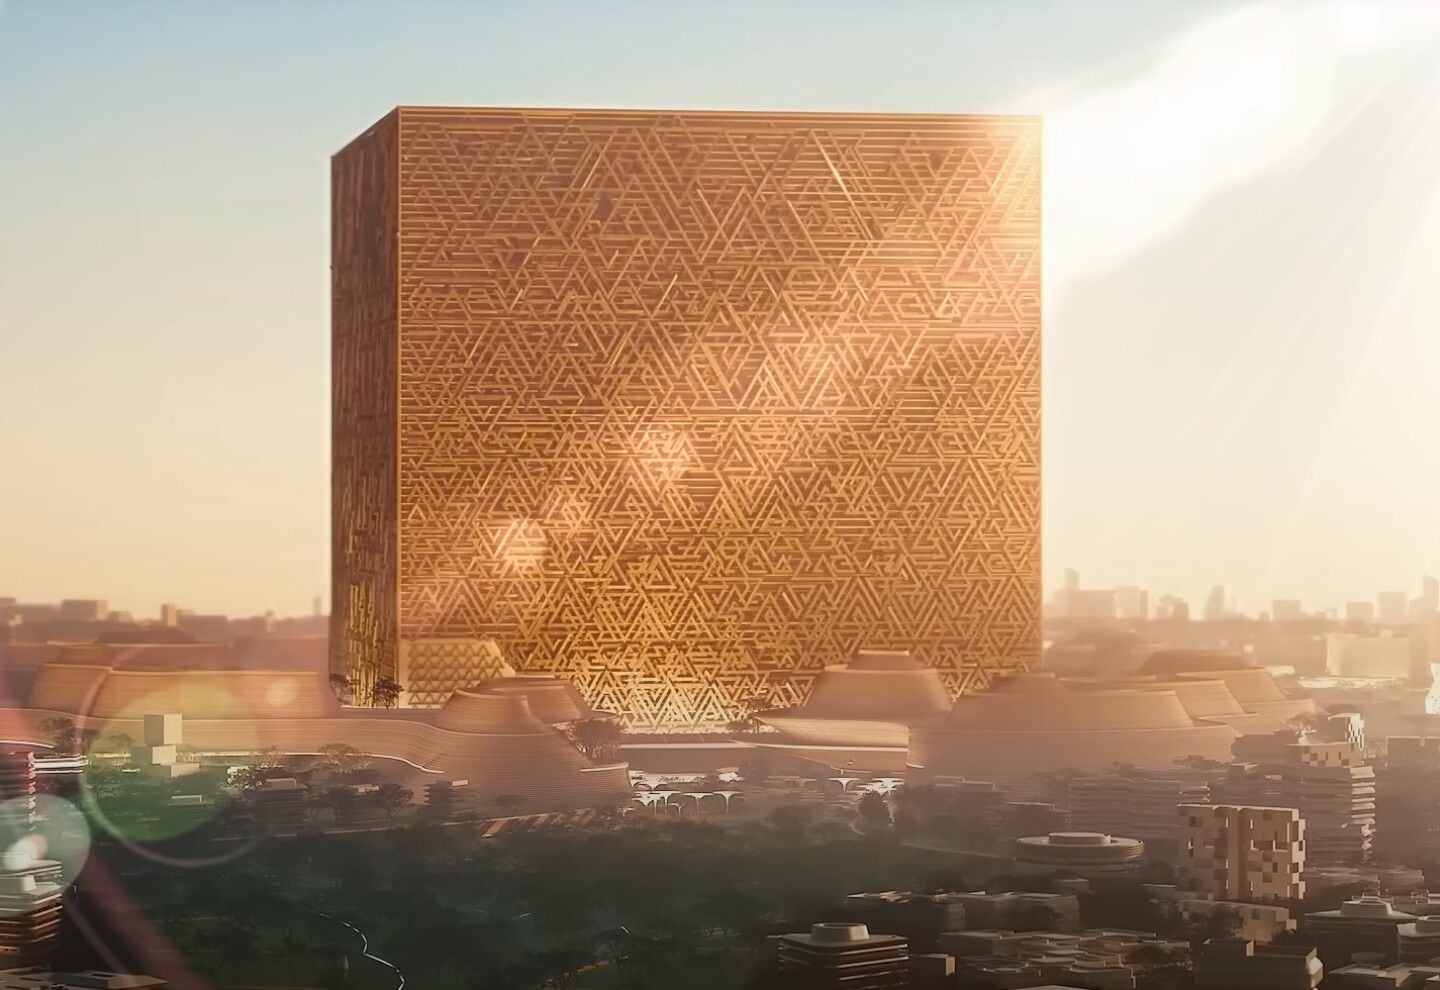 Proyecto abarcará área de 19 kilómetros cuadrados y busca convertirse en una nueva zona central de la ciudad. El edificio tendrá el nombre de Mukaab y se describe como “la nueva cara de Riyadh”.  Fotografía: